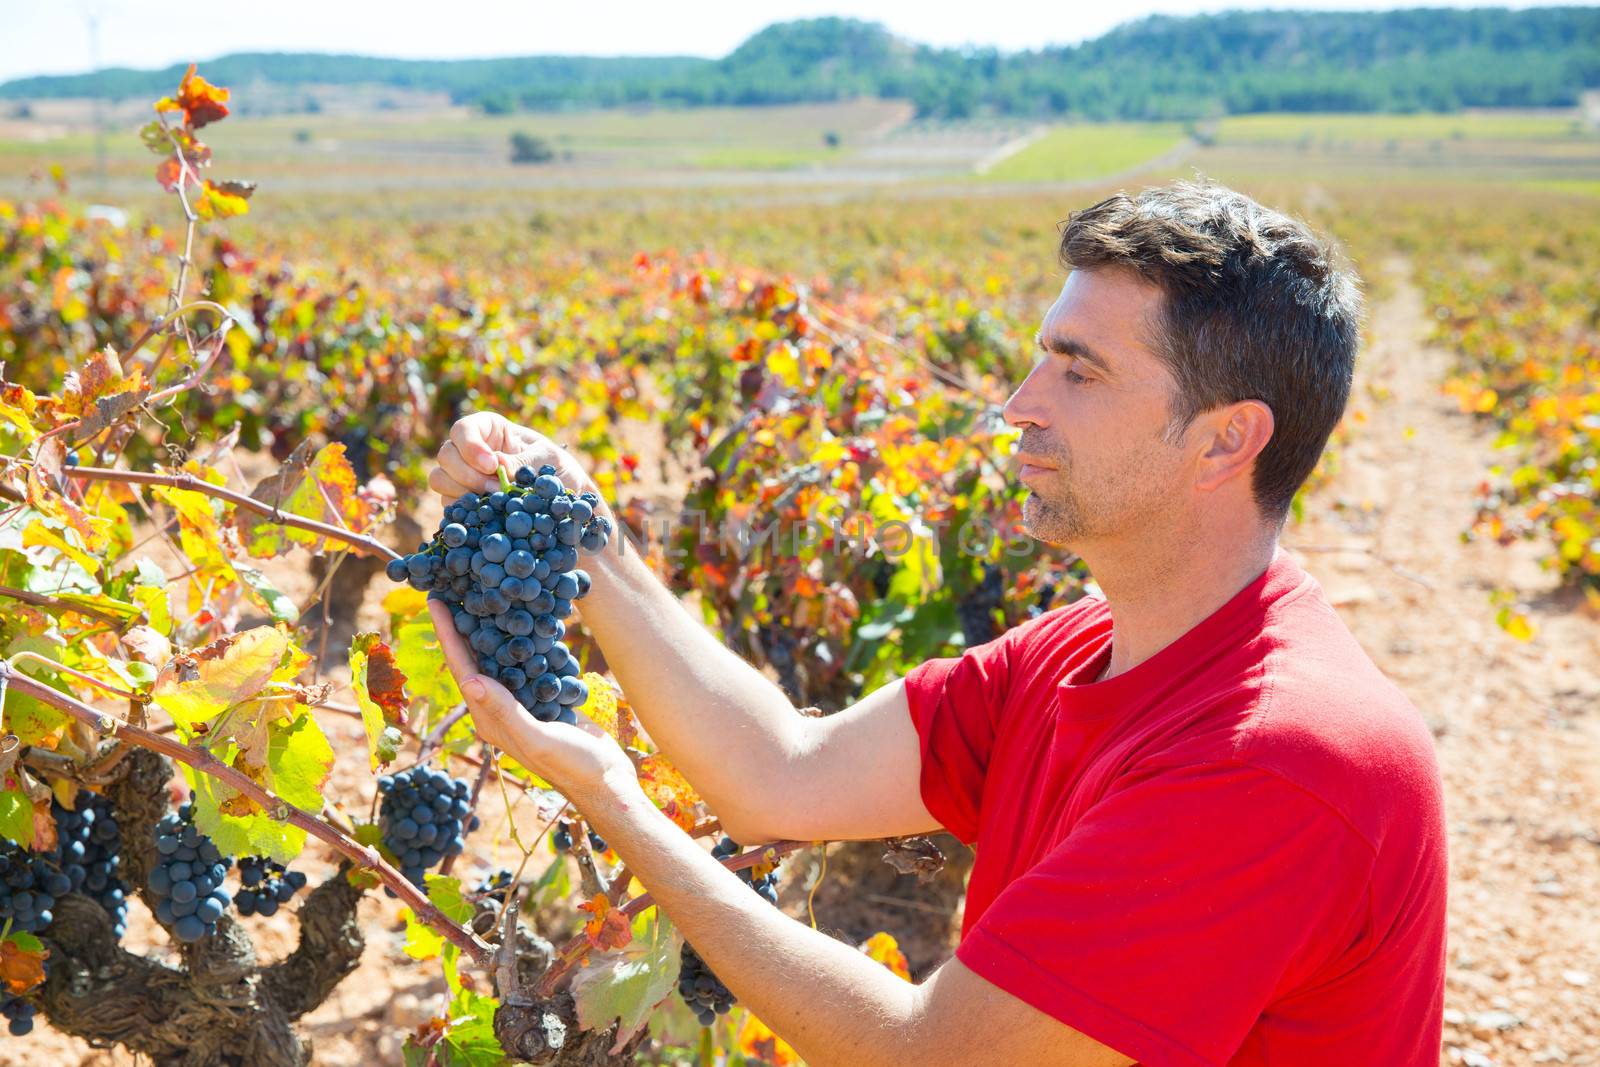 Winemaker harvesting Bobal grapes in mediterranean vineyard fields